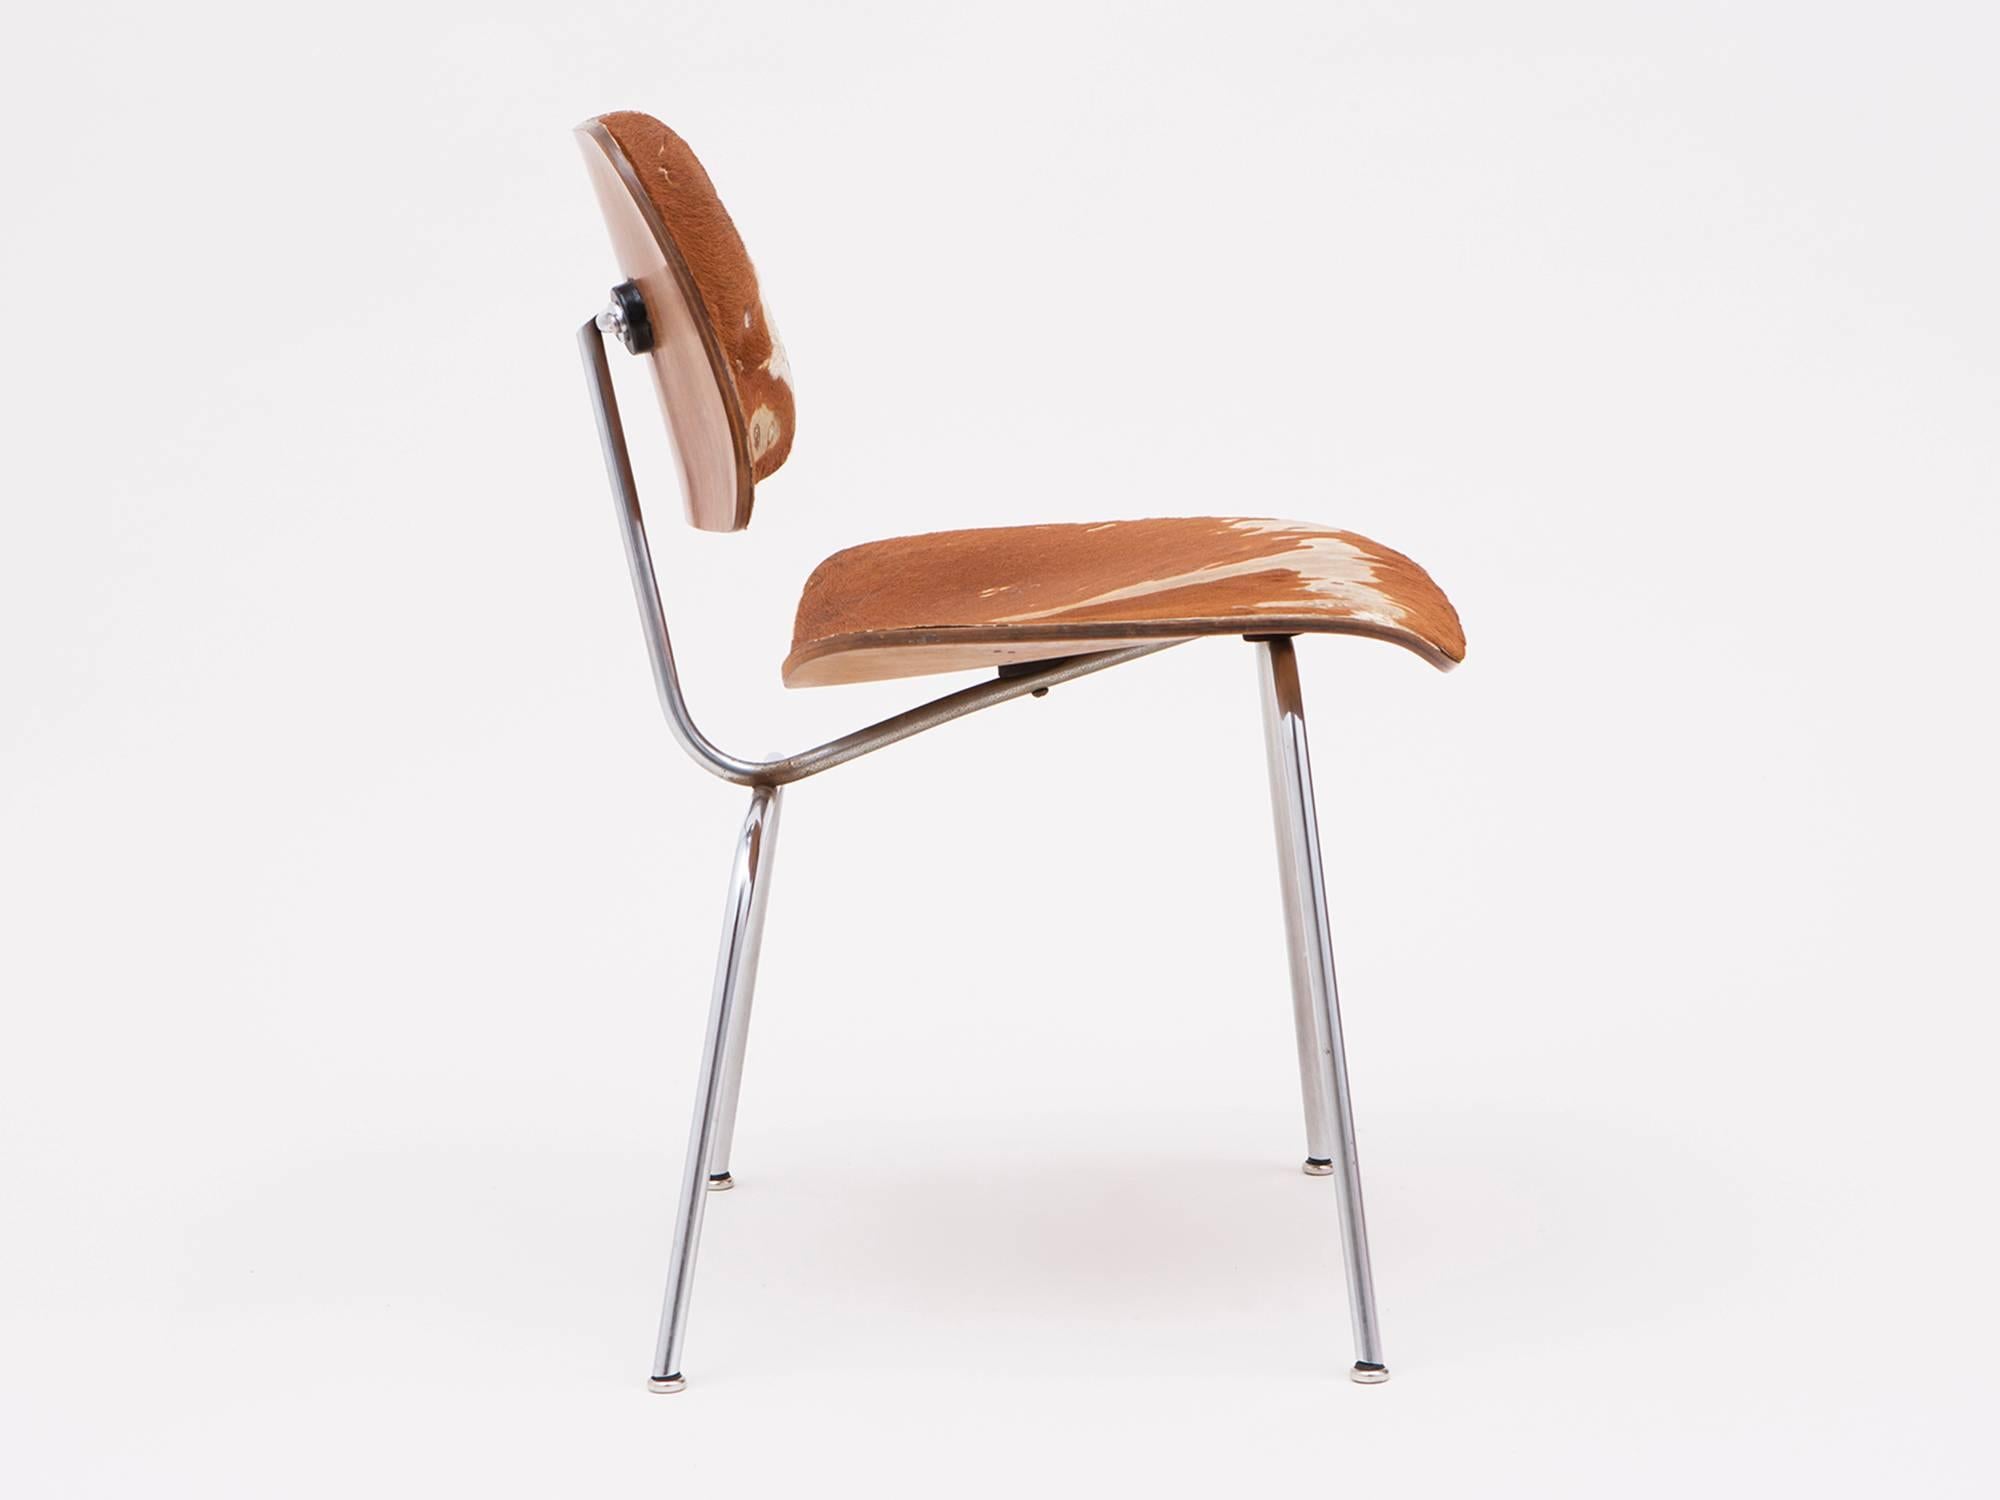 Ein früher DCM-Esszimmerstuhl:: entworfen von Charles und Ray Eames und hergestellt von Herman Miller:: ca. 1948. Dieser besonders seltene Stuhl ist aus Eschenholz und Stahl gefertigt und mit einer originalen Polsterung aus Slunk Skin oder Pelz